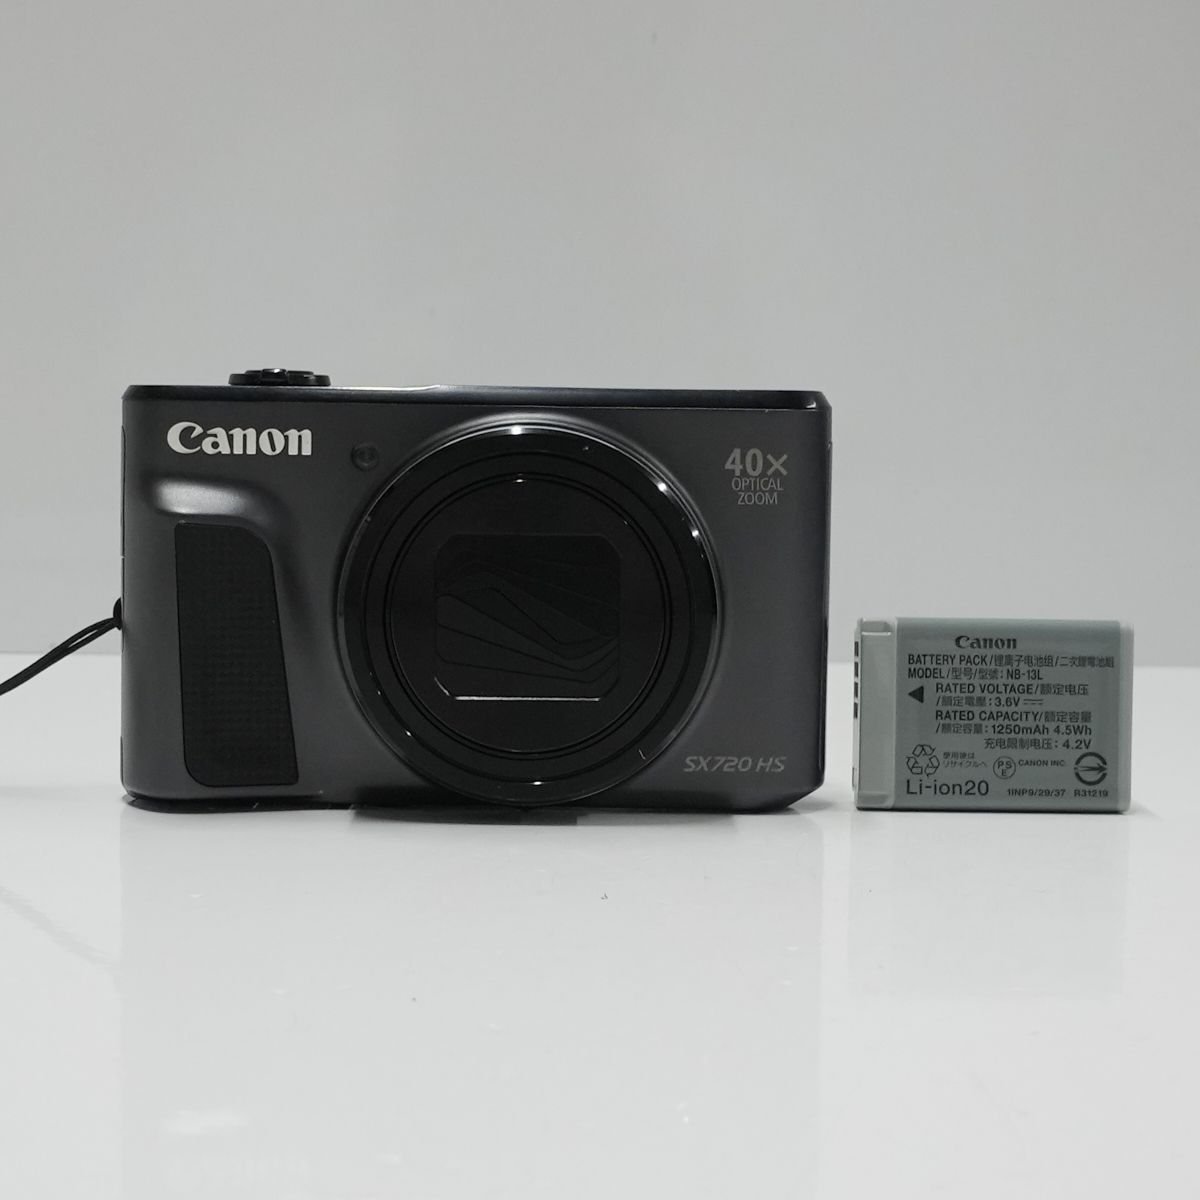 Canon PowerShot SX720 HS USED美品 デジタルカメラ 本体+バッテリー ...